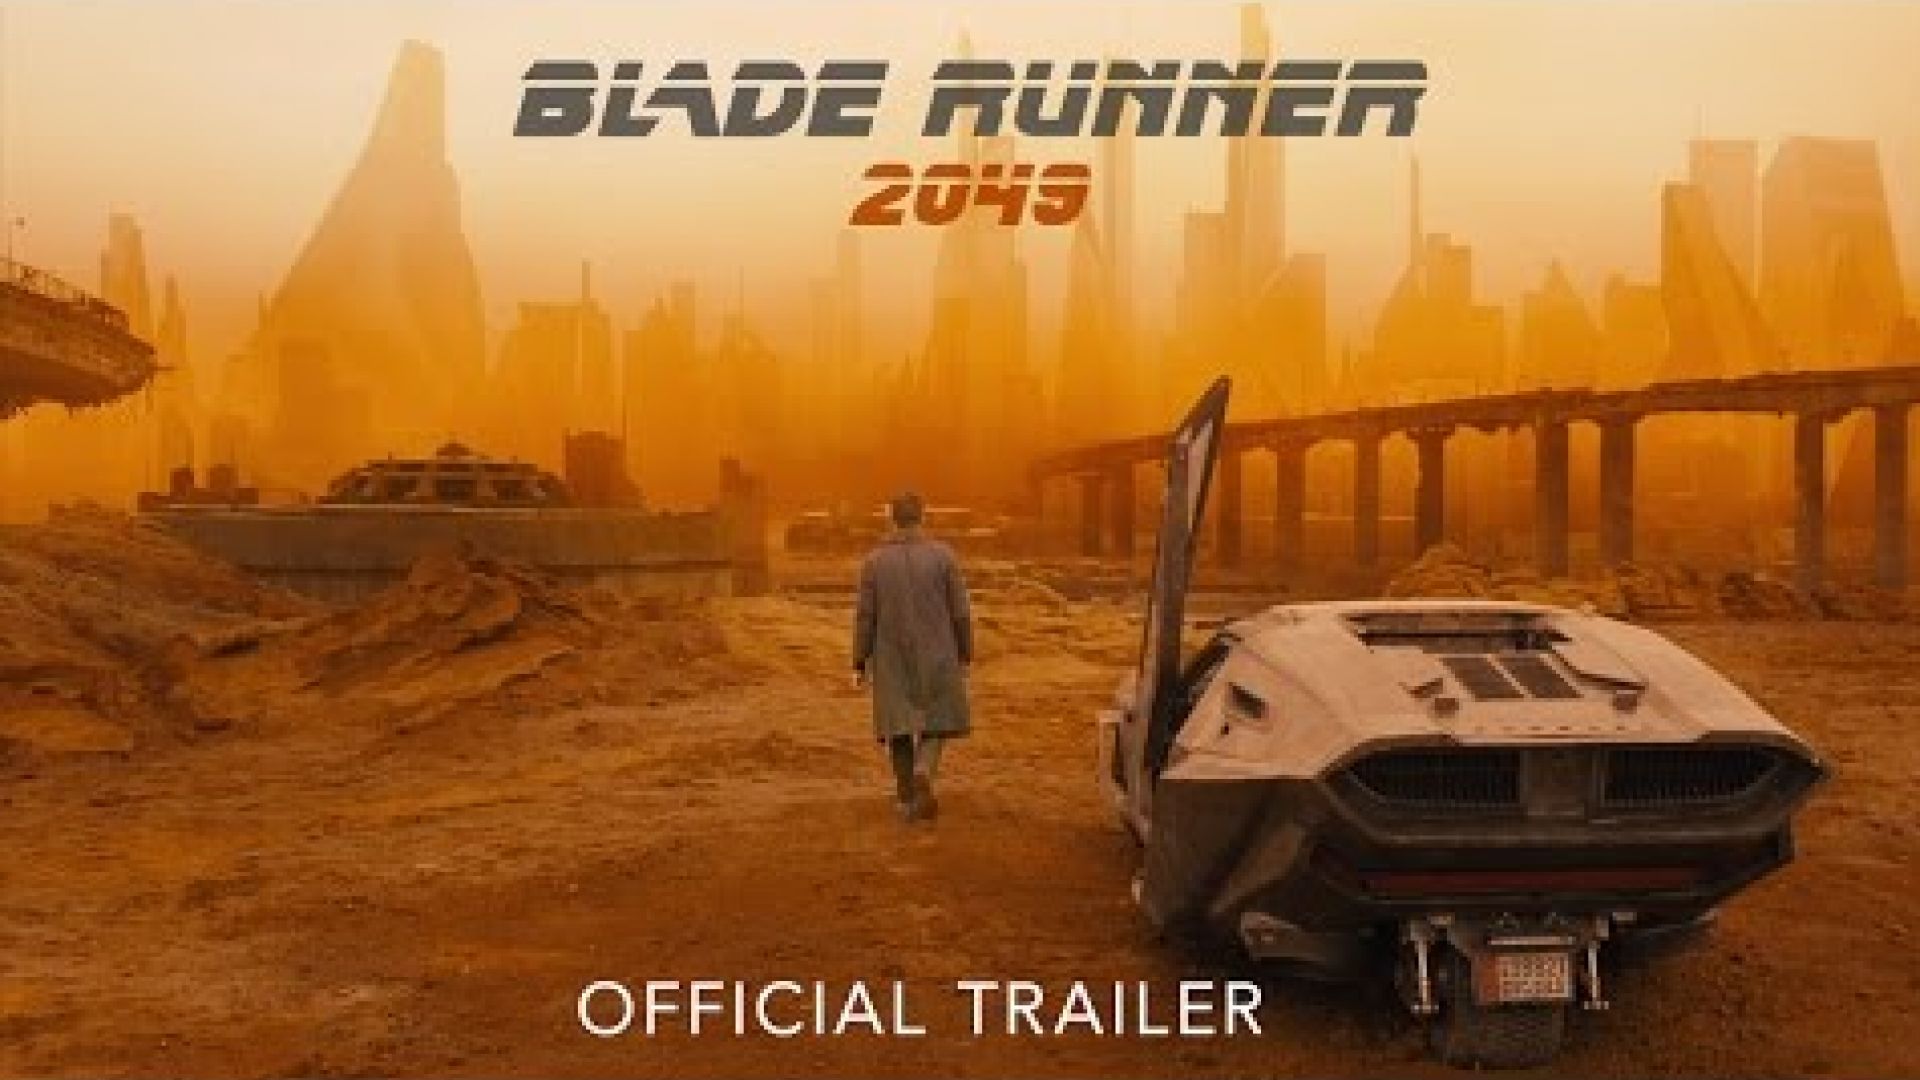 New Trailer for &#039;Blade Runner 2049&#039;